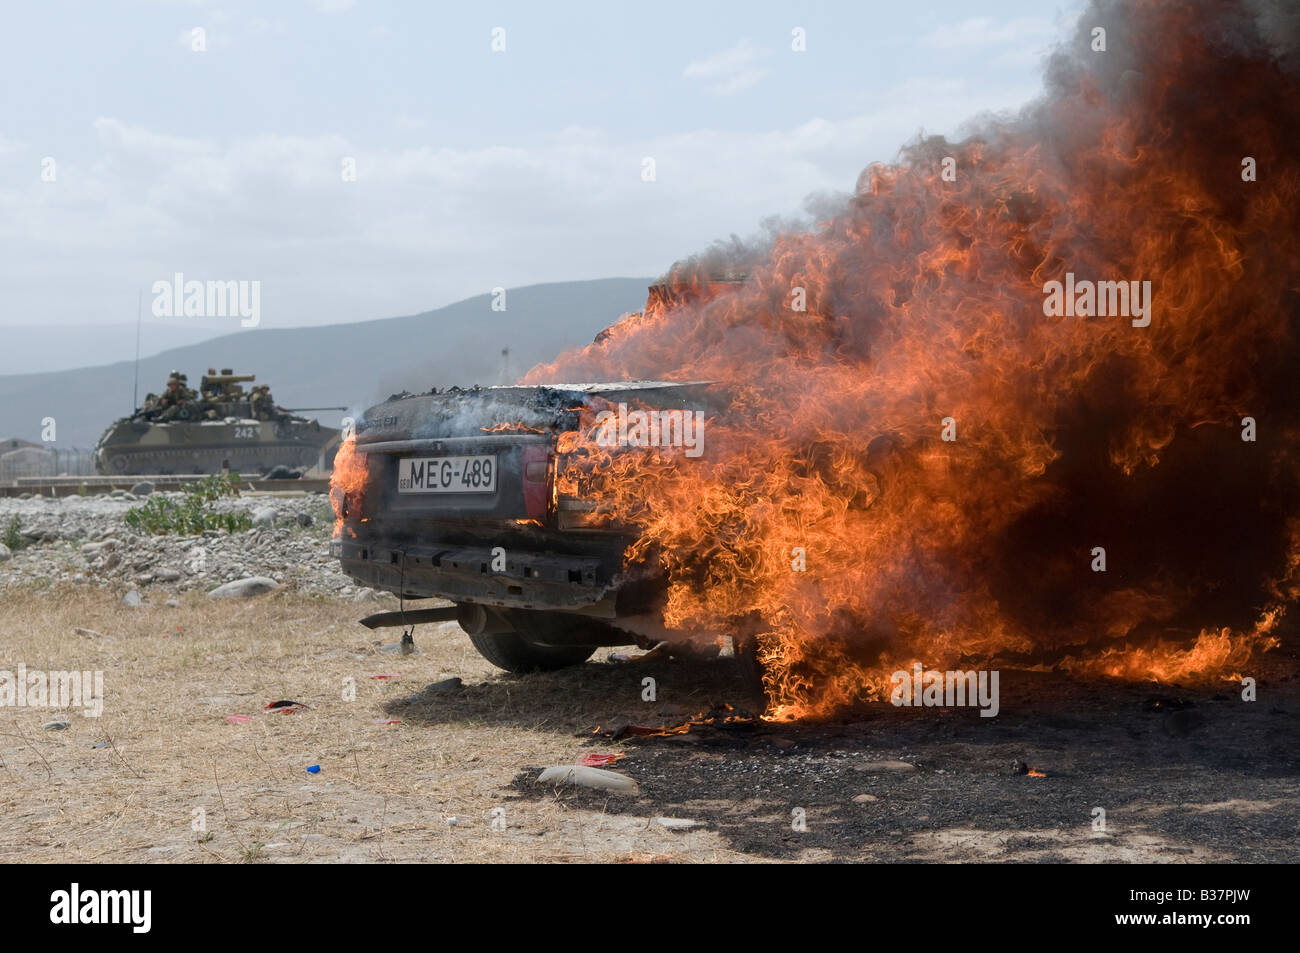 Un véhicule civil monte en flammes après avoir été frappé par les forces russes pendant la guerre russo-géorgienne d'août 2008 Banque D'Images